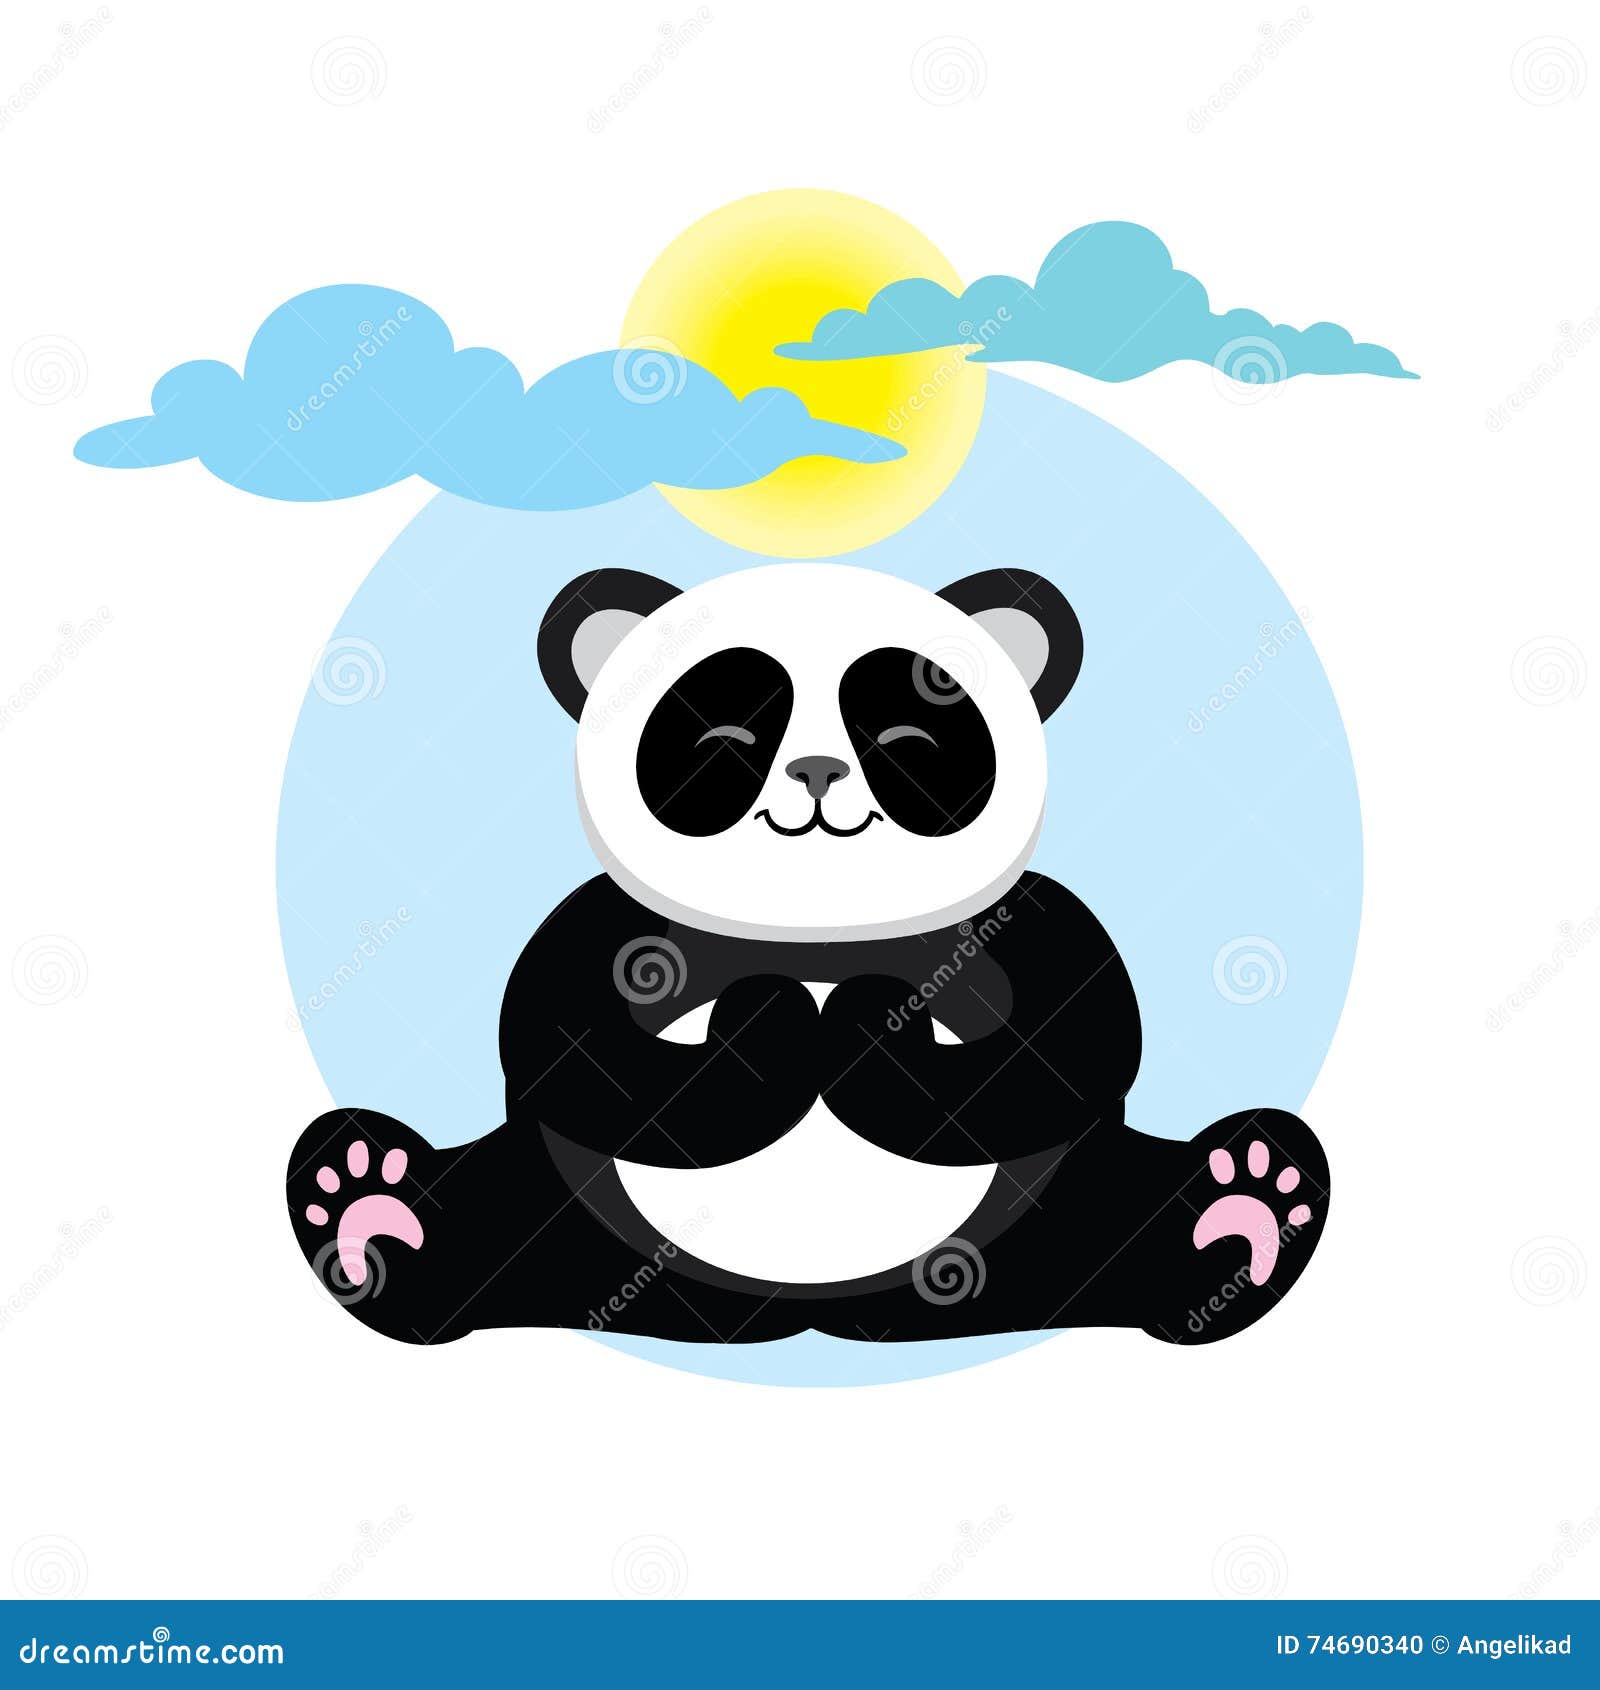 Character Cute and Beautiful Panda Stock Vector - Illustration of asana ...